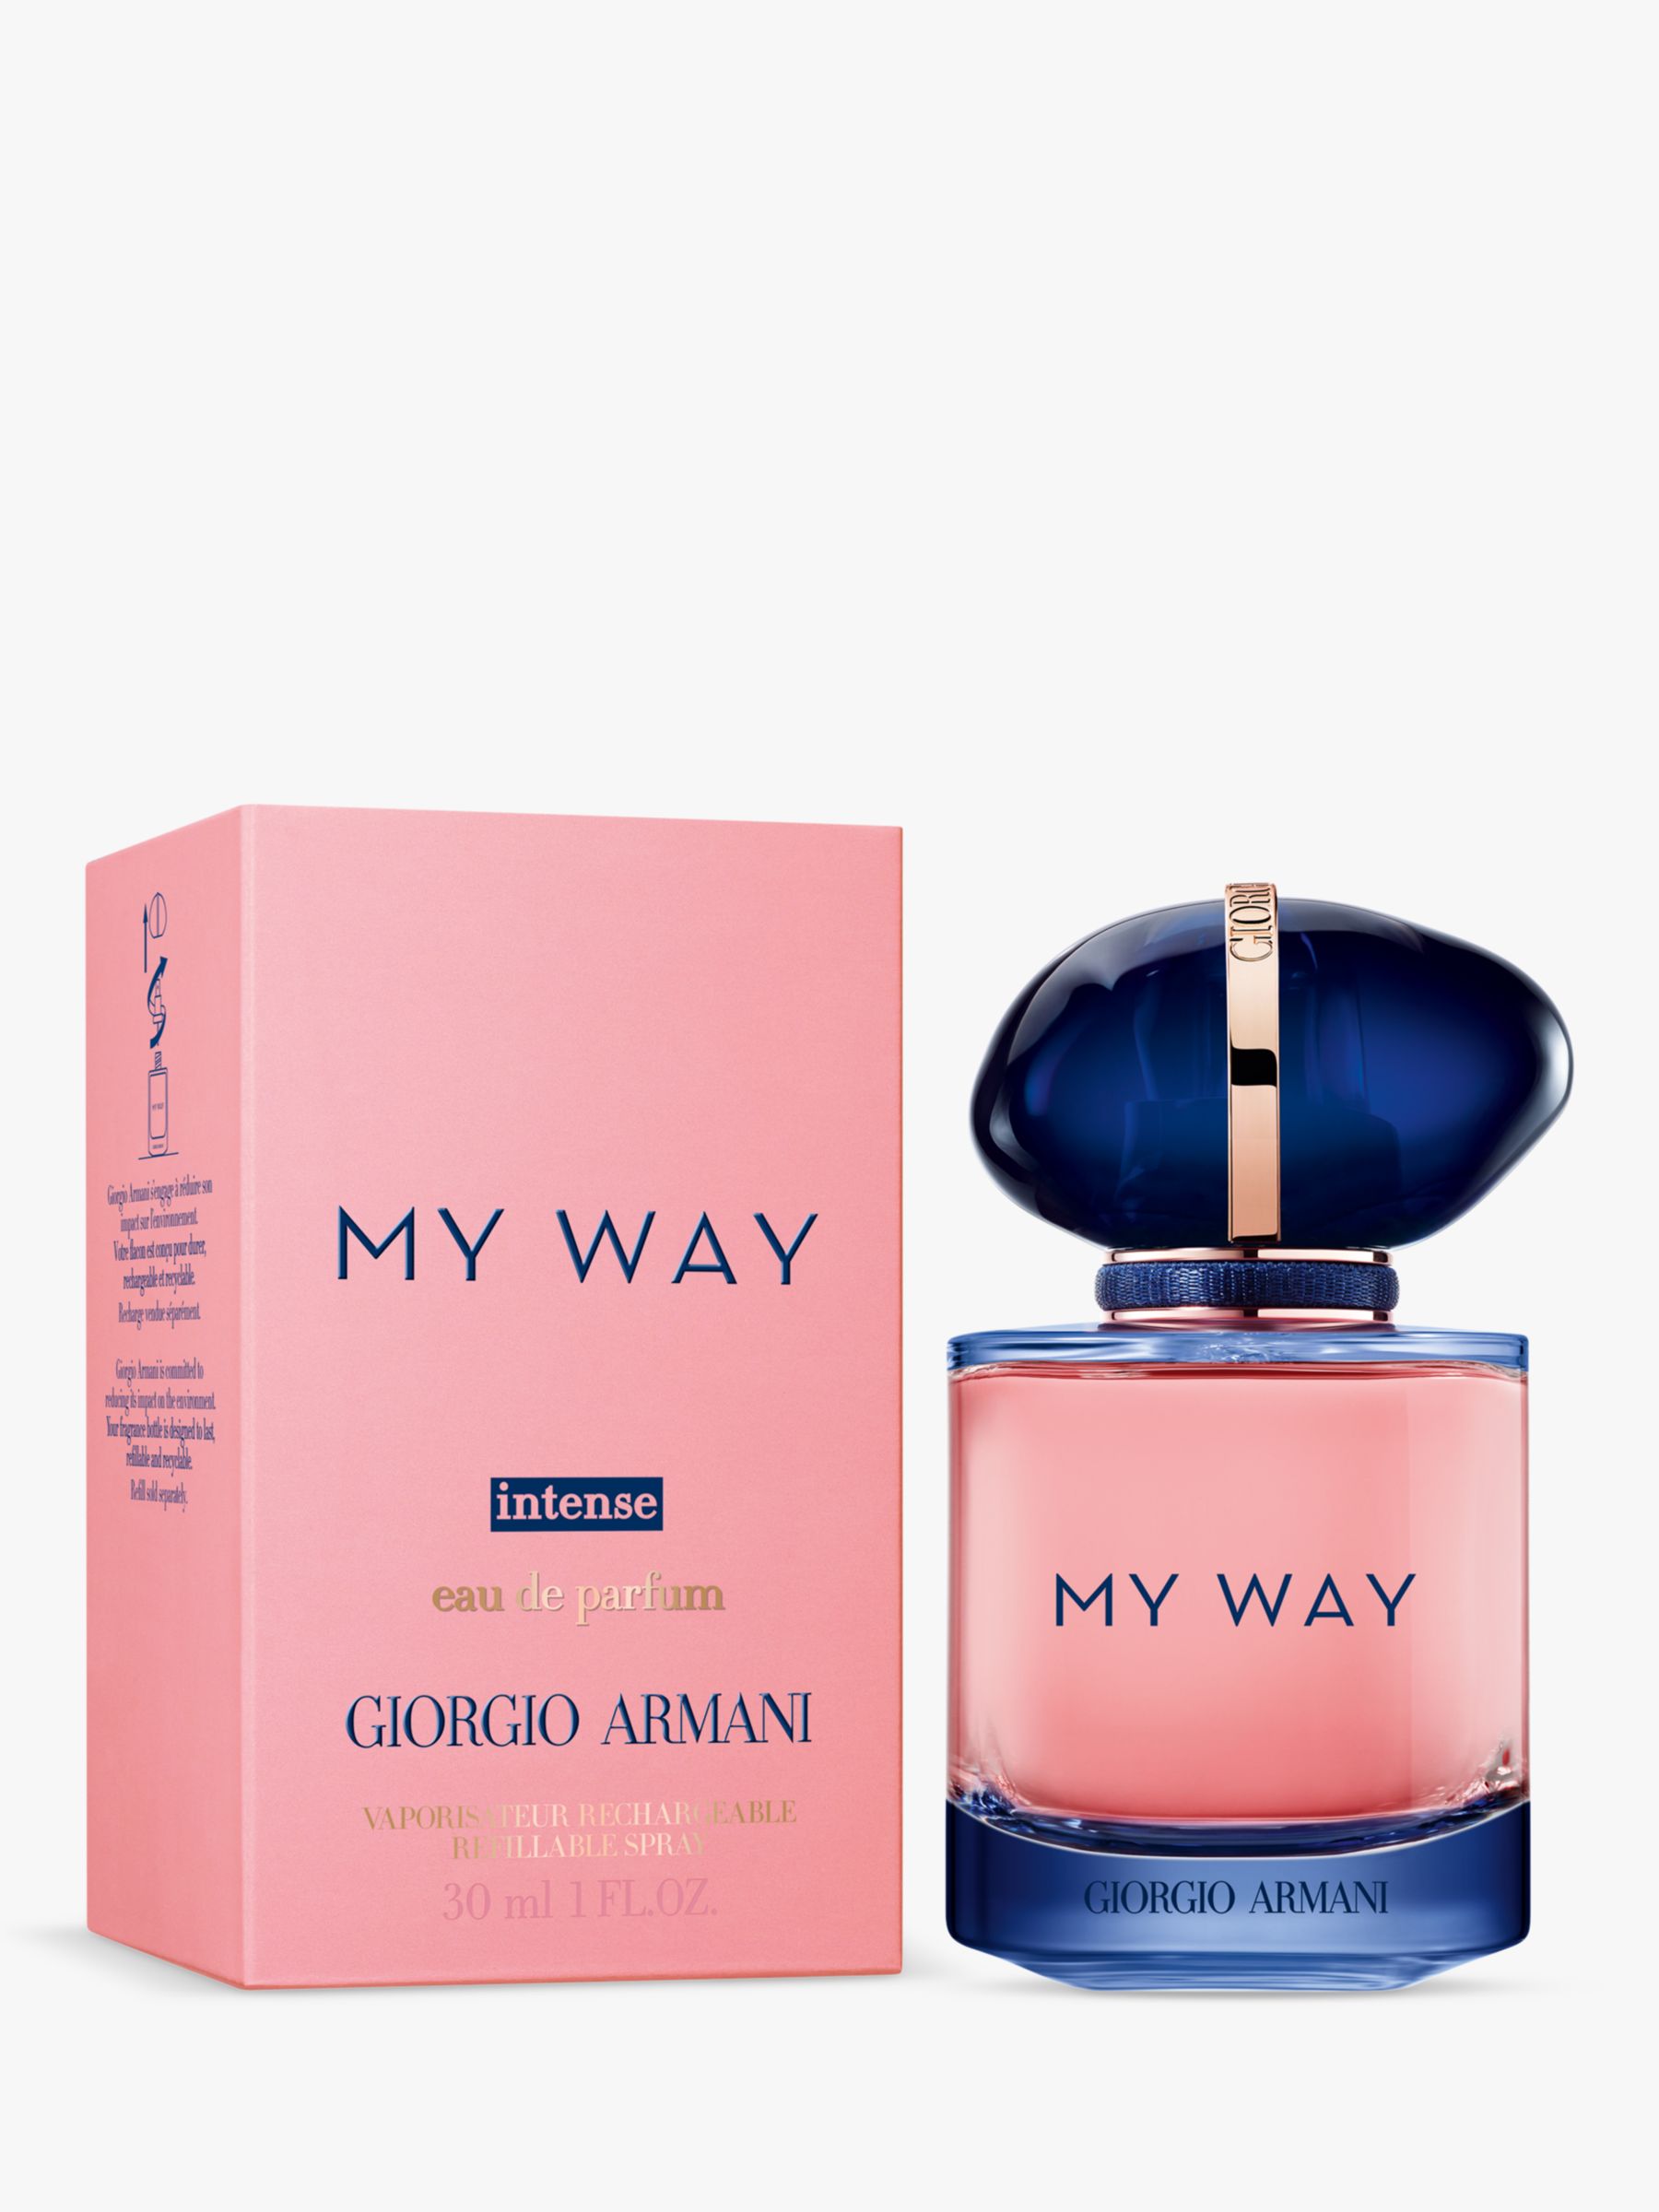 Giorgio Armani My Way Intense Eau de Parfum Refillable, 30ml 2